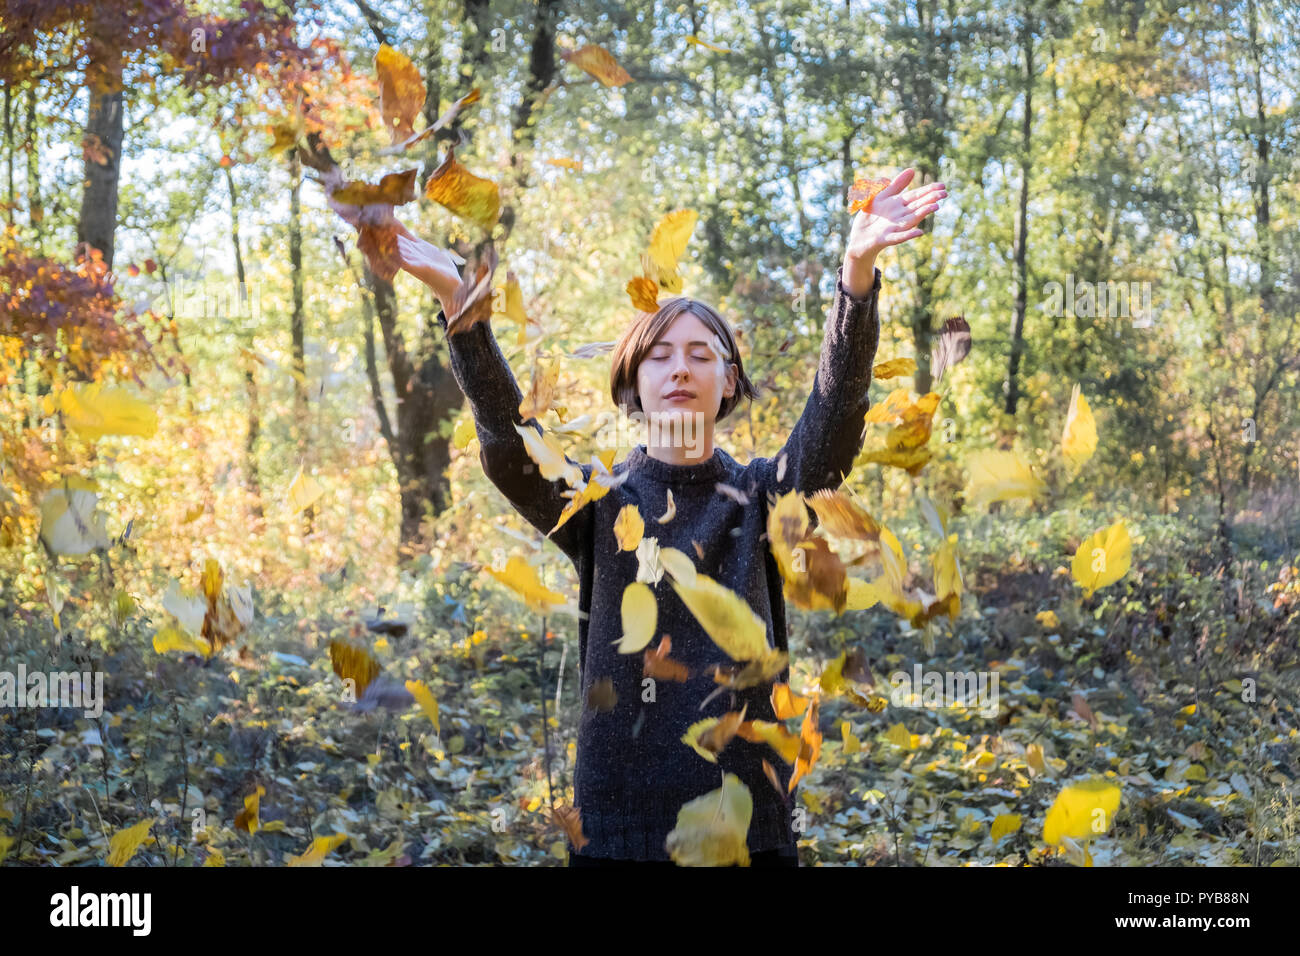 Mujer lanza otoño hojas amarillas en el aire. Retrato de mujer joven relajado con los ojos cerrados y coloridas hojas volando a su alrededor. Foto de stock